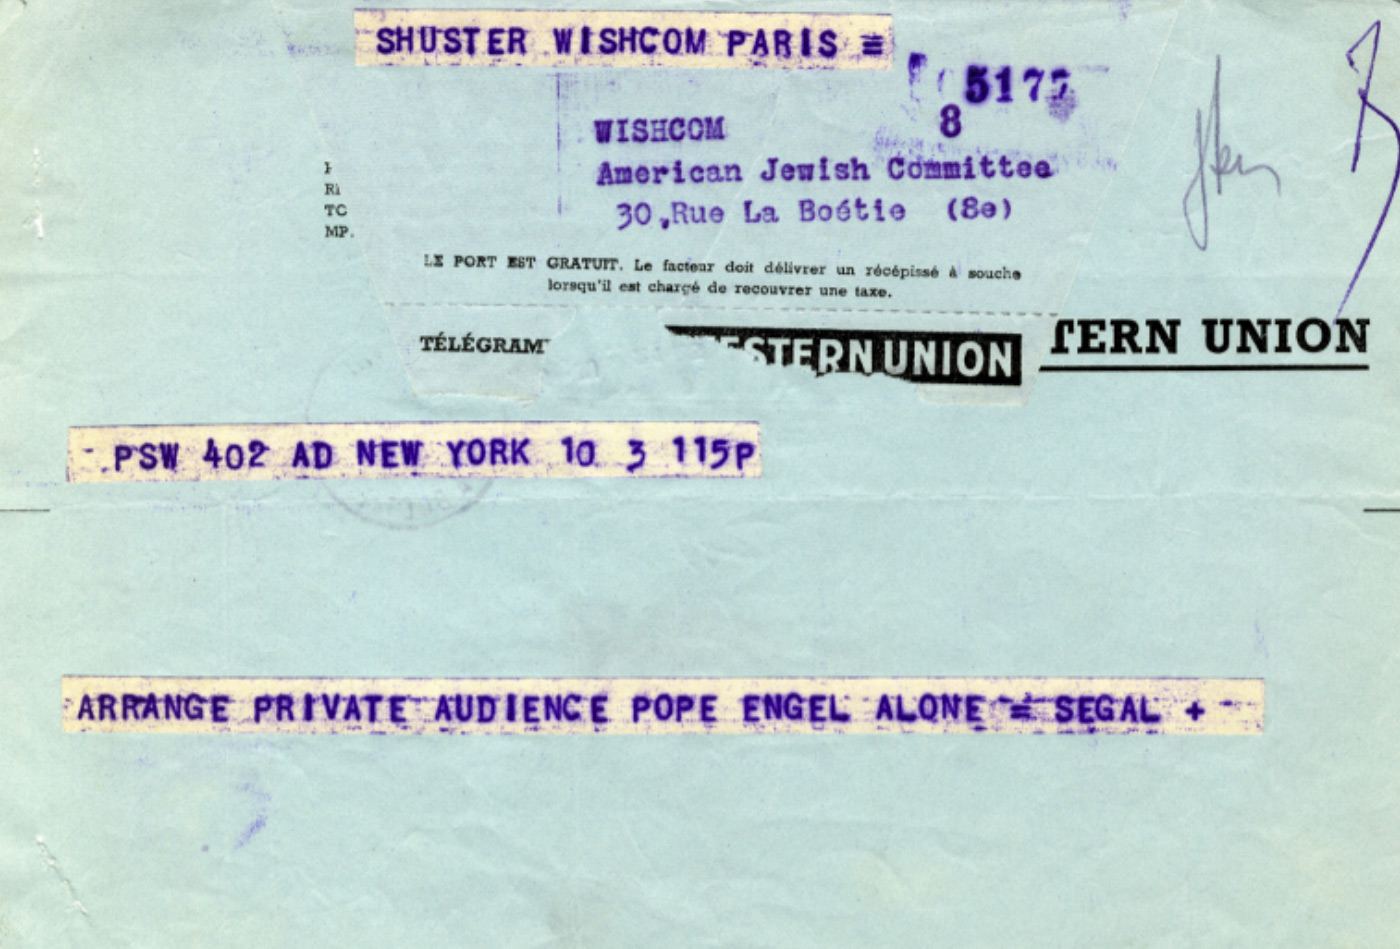 Le télégramme confirme le rendez-vous entre le Pape Pie XII et Irving Engel, président d’AJC, en 1957. 